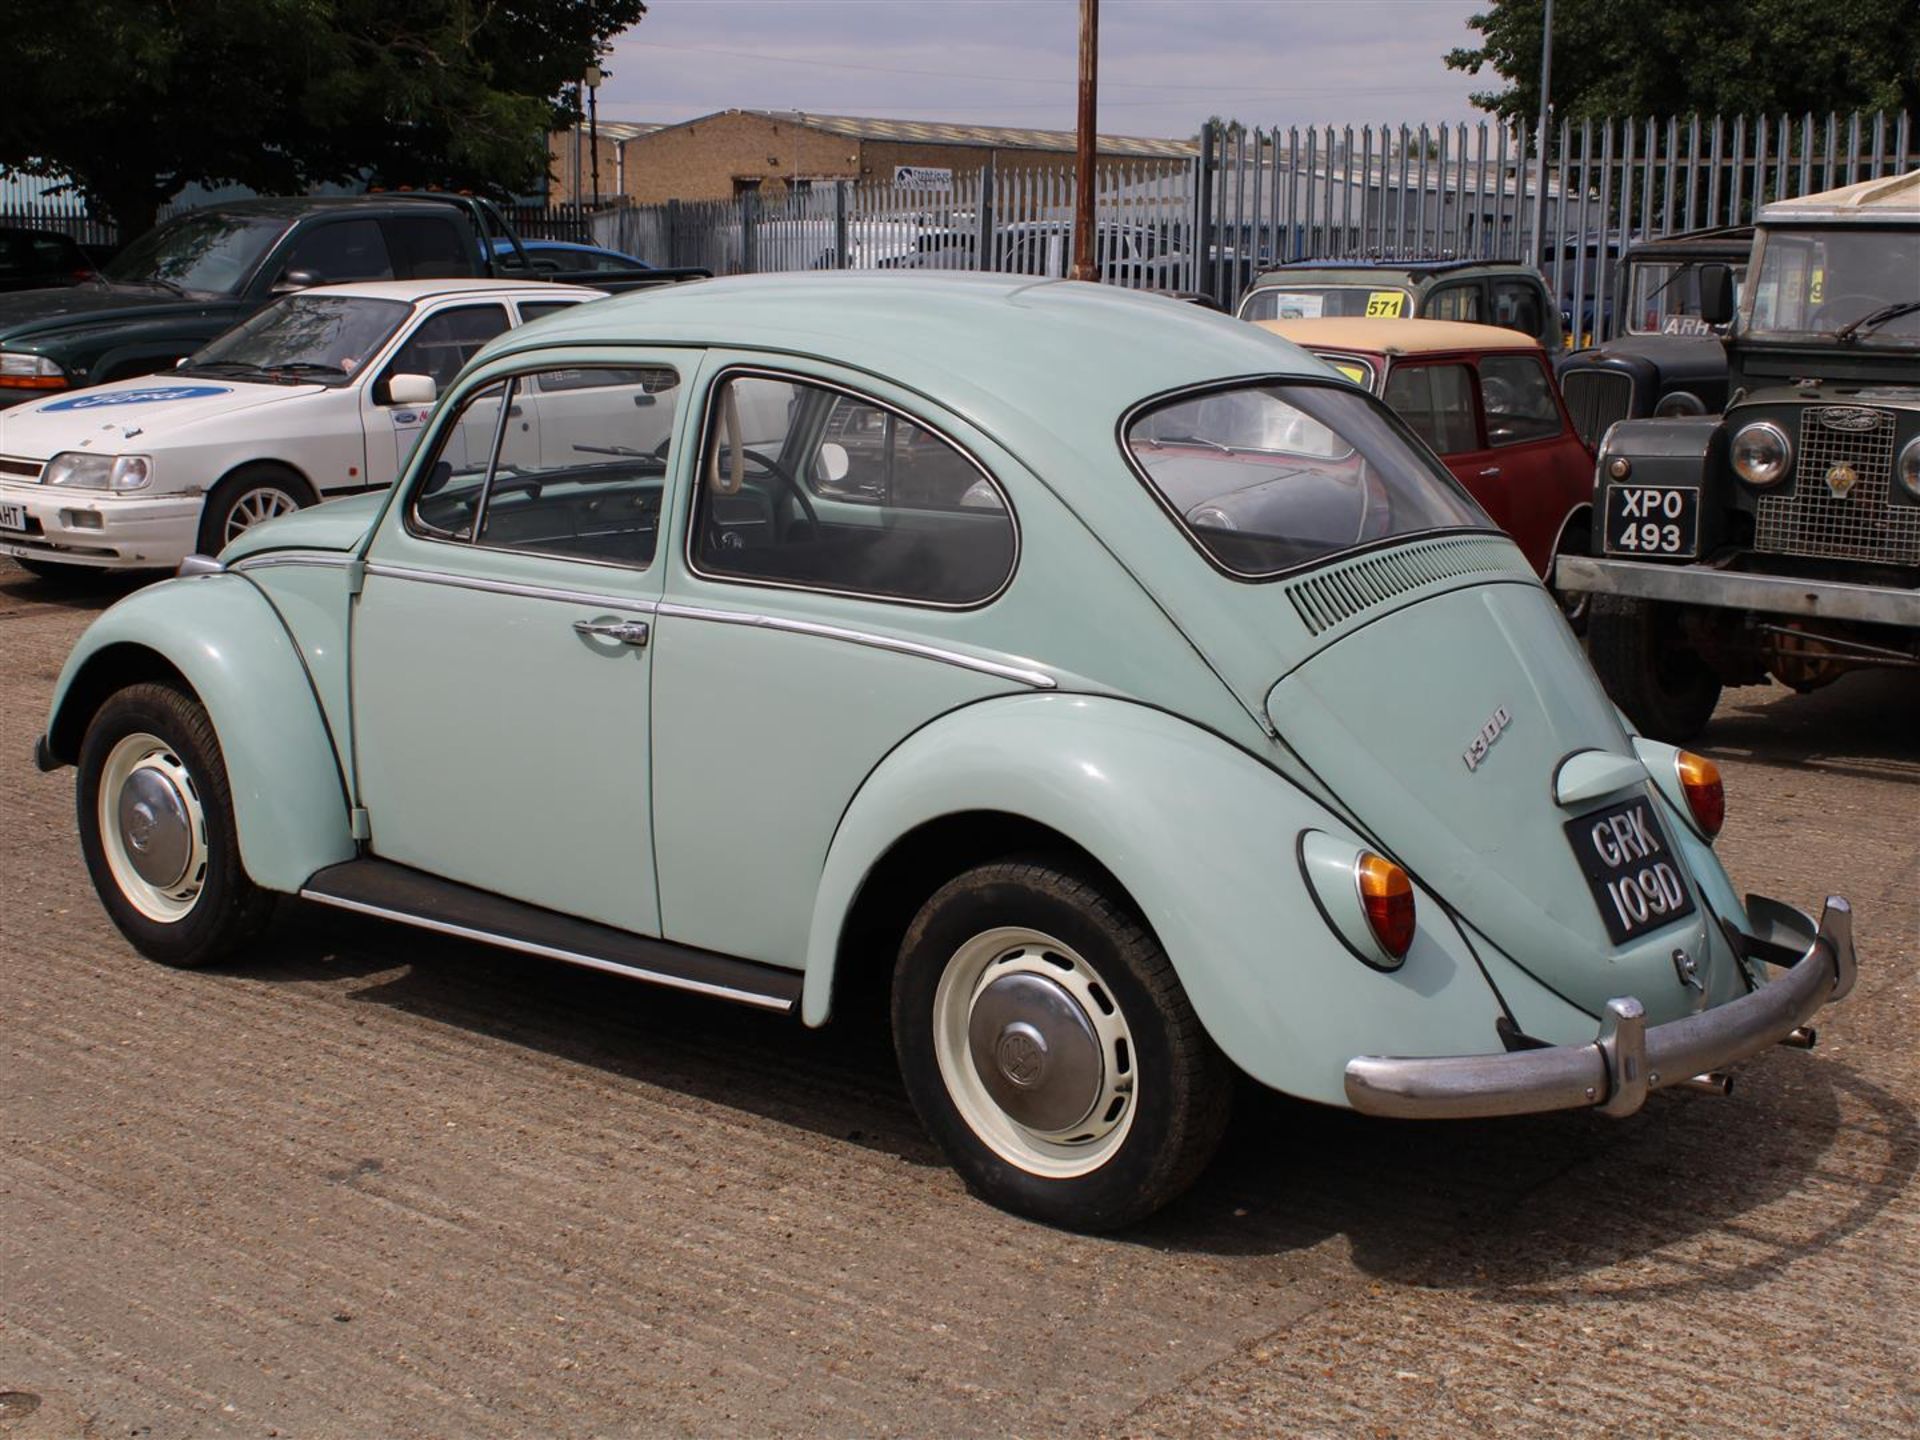 1966 VW Beetle 1300 - Image 5 of 27